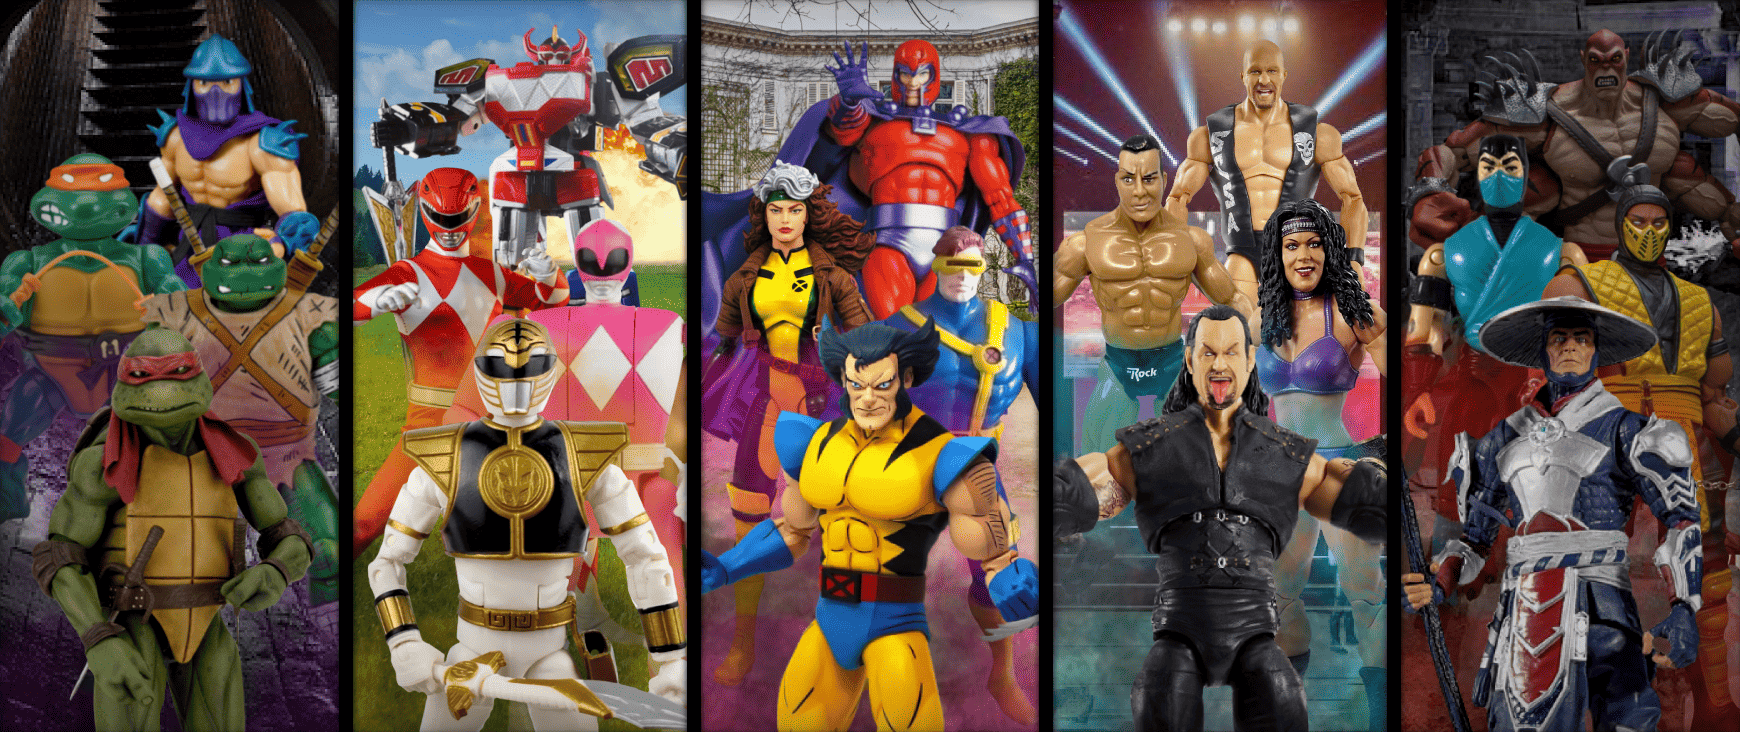 TMNT, Power Rangers, X-Men, WWF and Mortal Kombat action figures